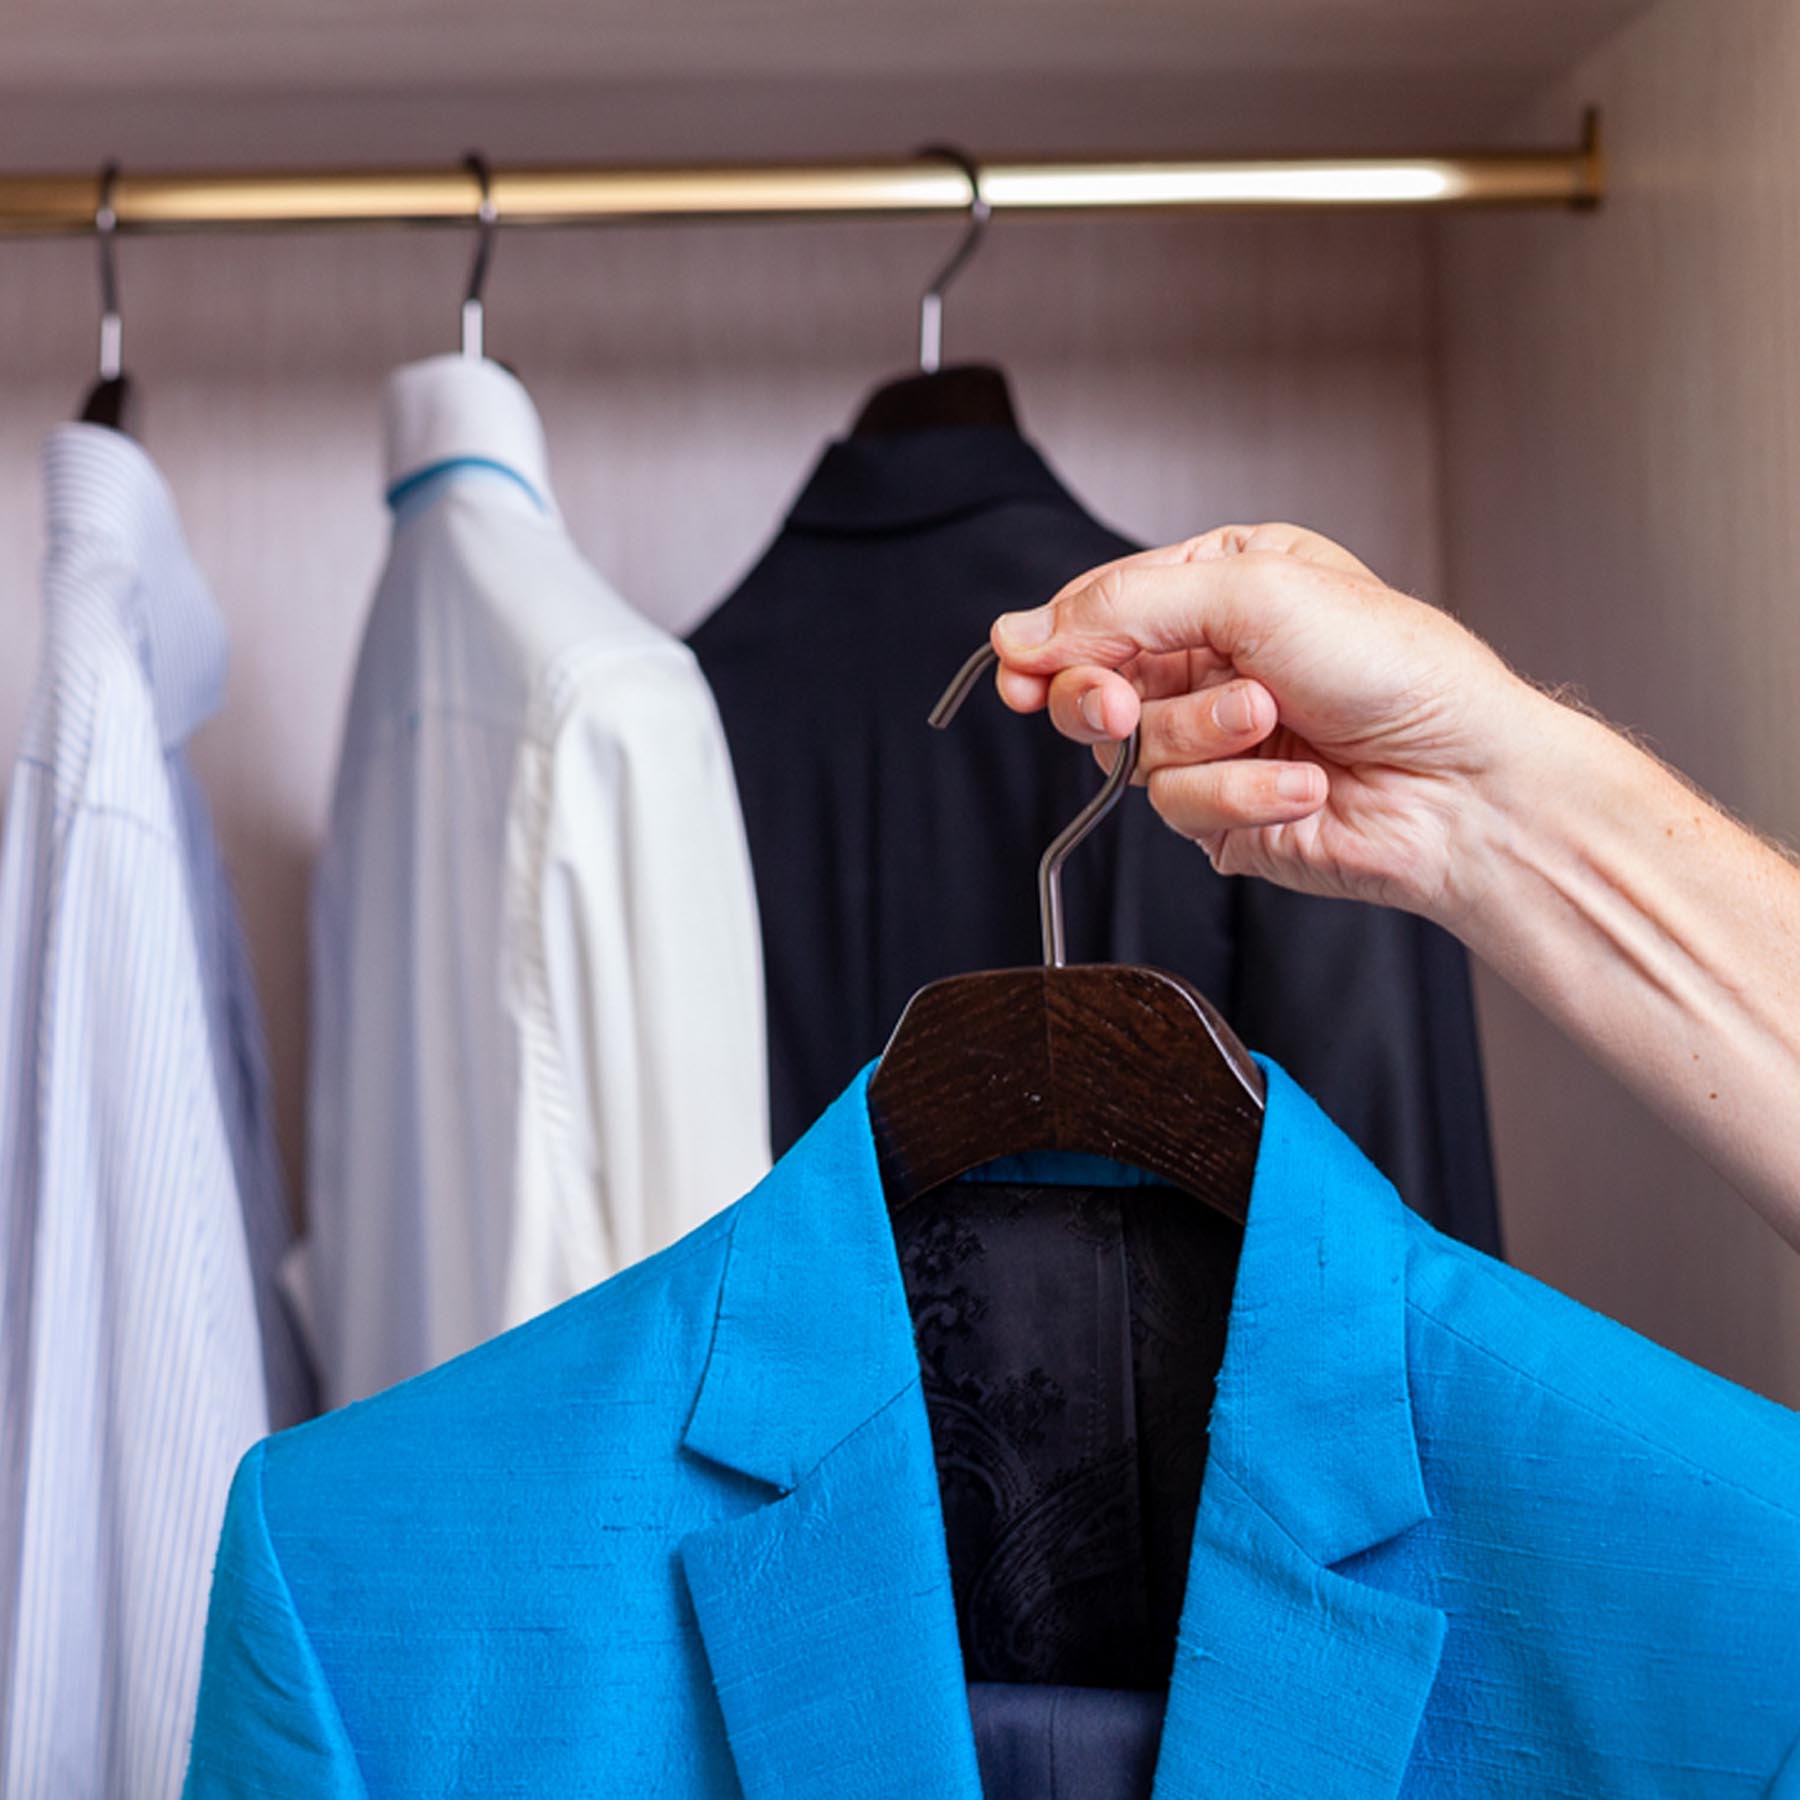 6 luxuriöse Kleiderbügel für Jacke und Anzug in Aschschwarz gebürstet